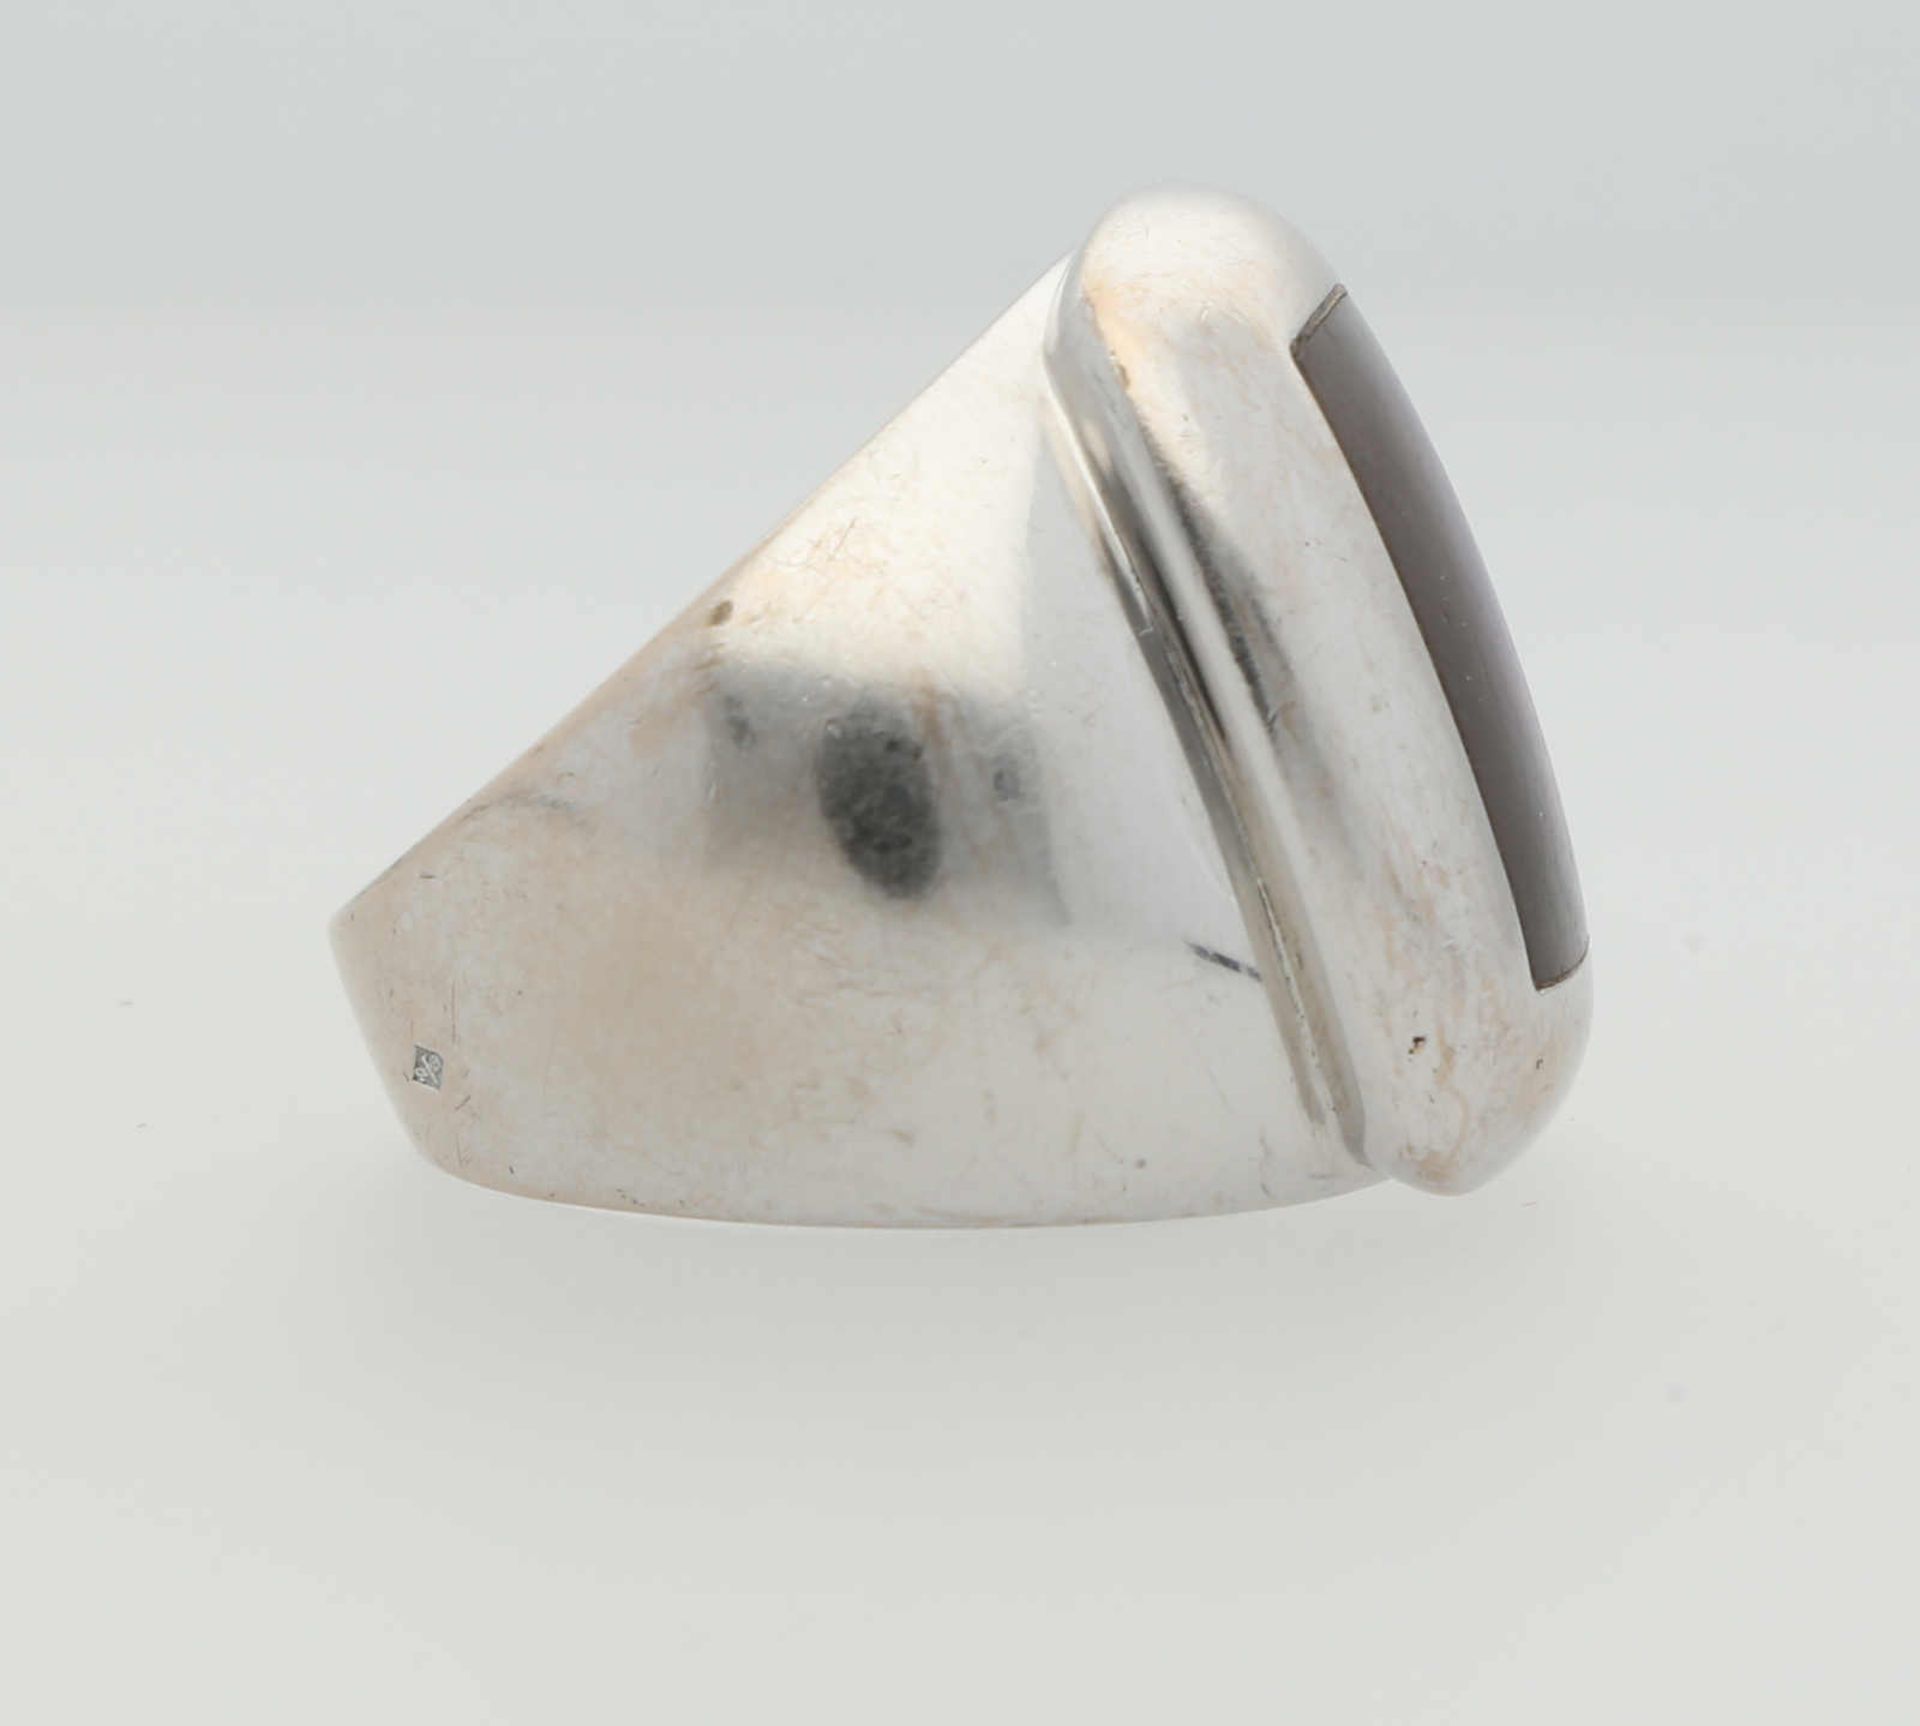 VAN CLEEF & ARPELS Ring Modell "Babylon" mit grauer Perlmutt-Einlage an polierter Ringschiene, - Image 2 of 3